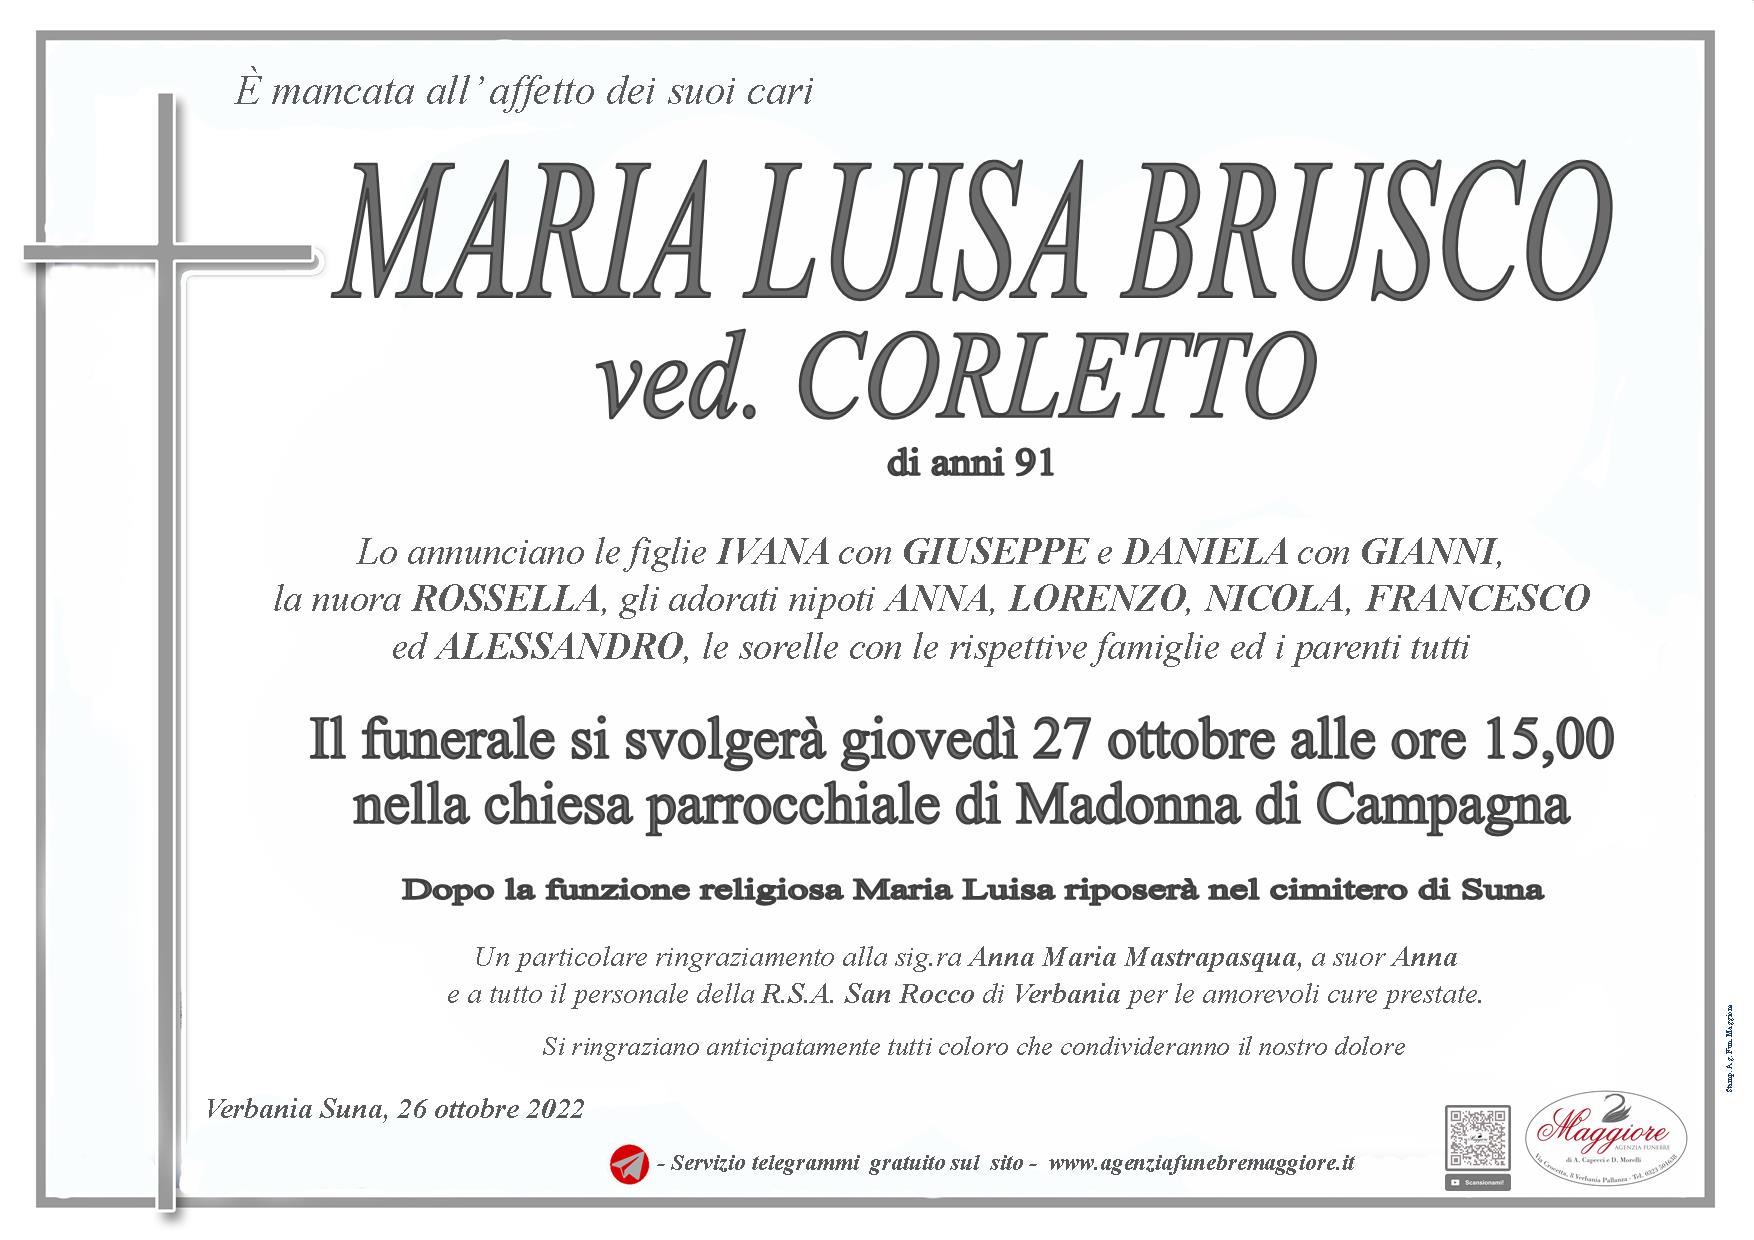 Maria Luisa Brusco ved. Corletto